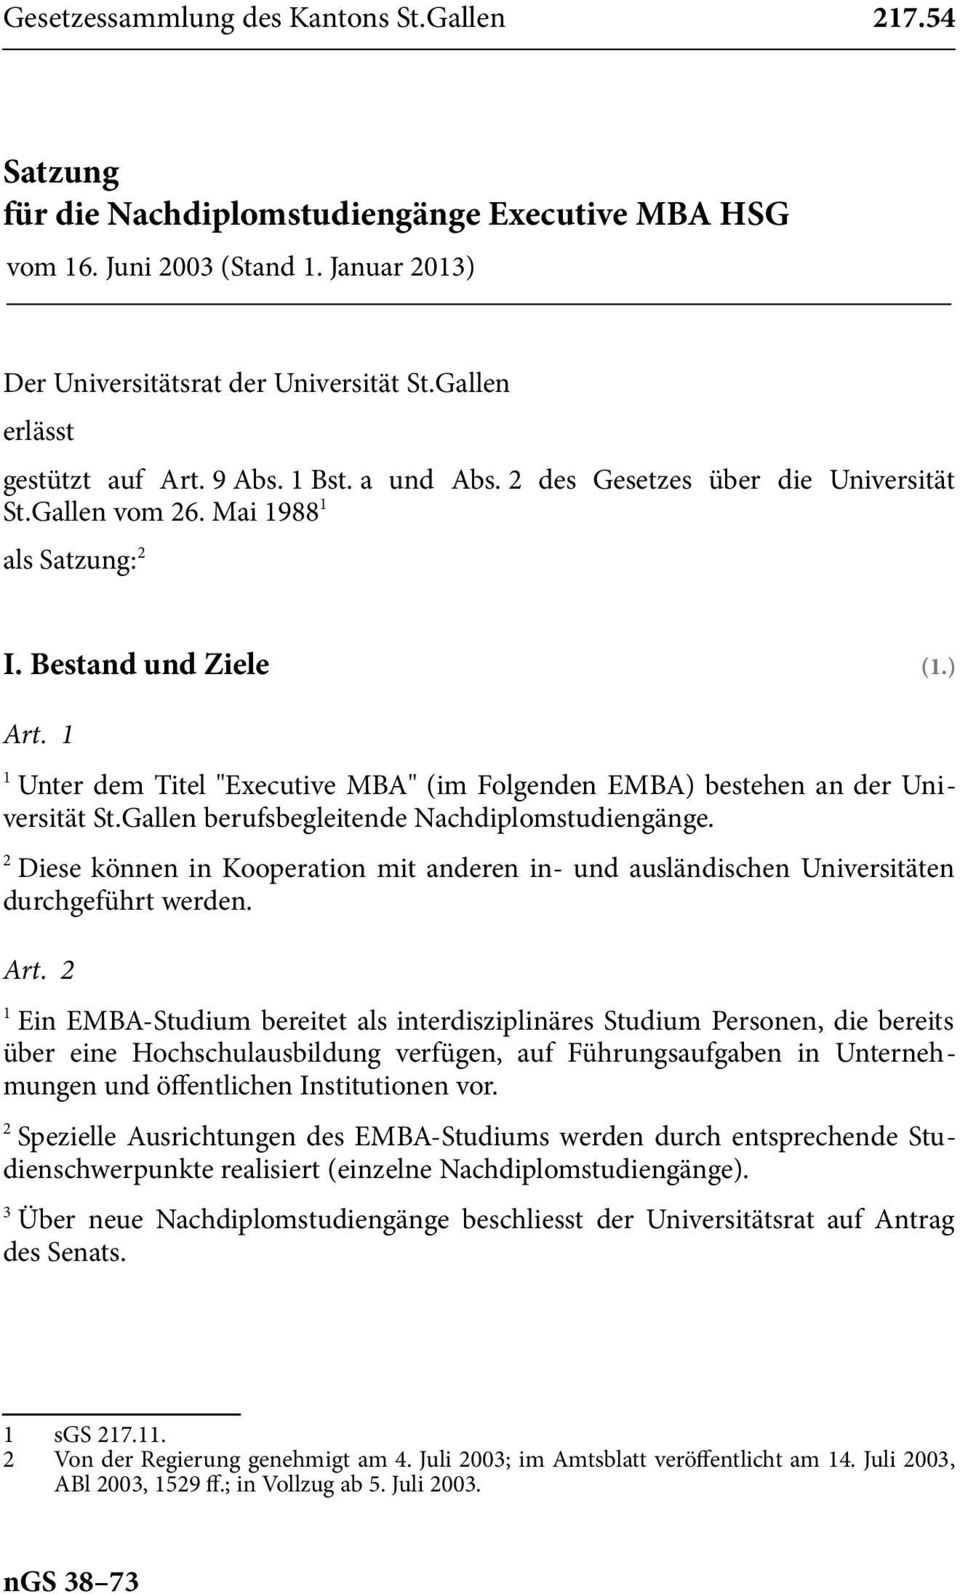 Unter dem Titel "Executive MBA" (im Folgenden EMBA) bestehen an der Universität St.Gallen berufsbegleitende Nachdiplomstudiengänge.